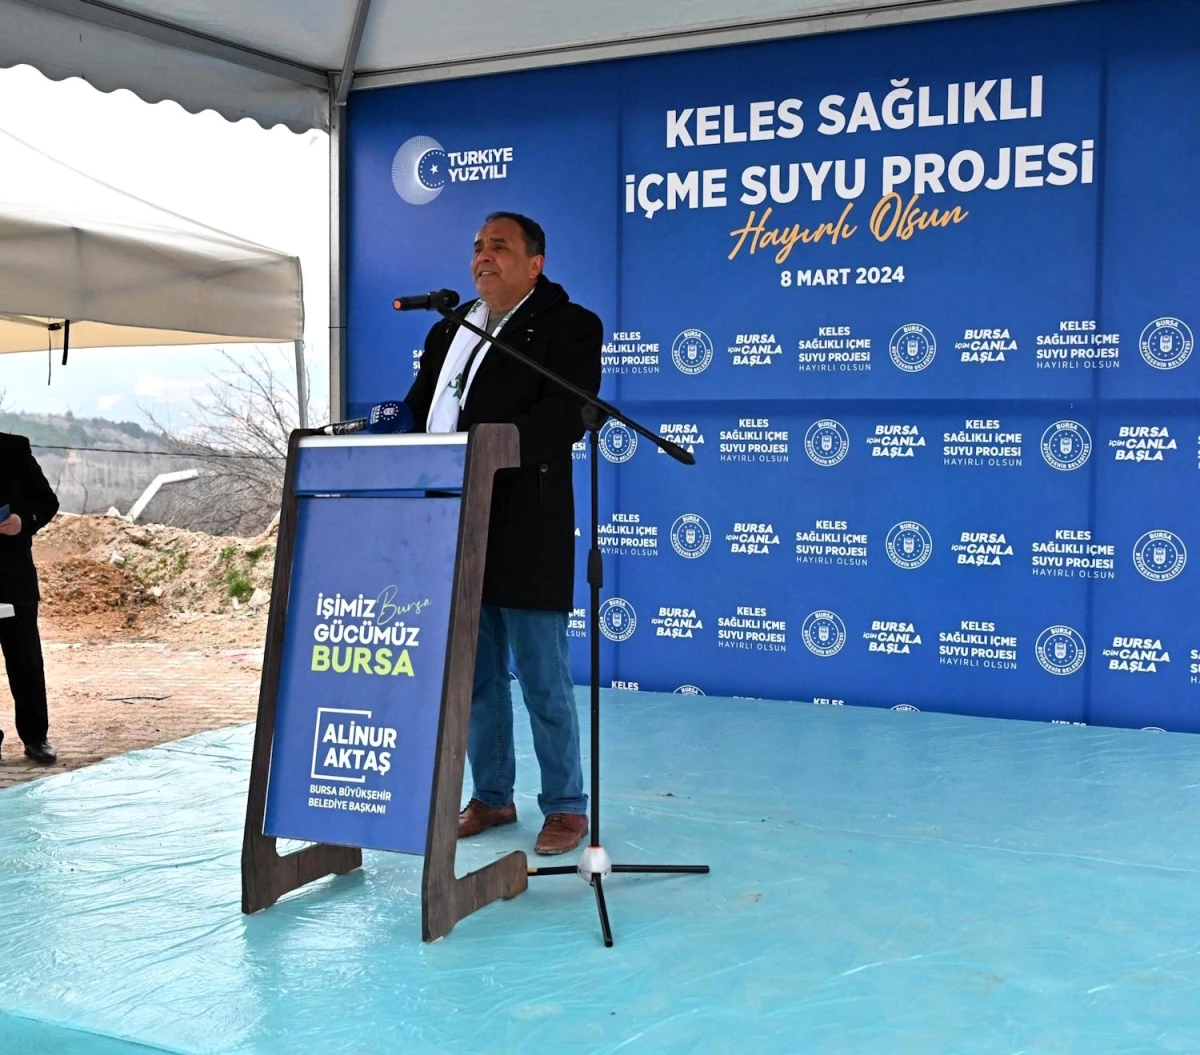 Bursa Büyükşehir Belediyesi Keles ilçesindeki 8 mahalleye kesintisiz içme suyu sağladı